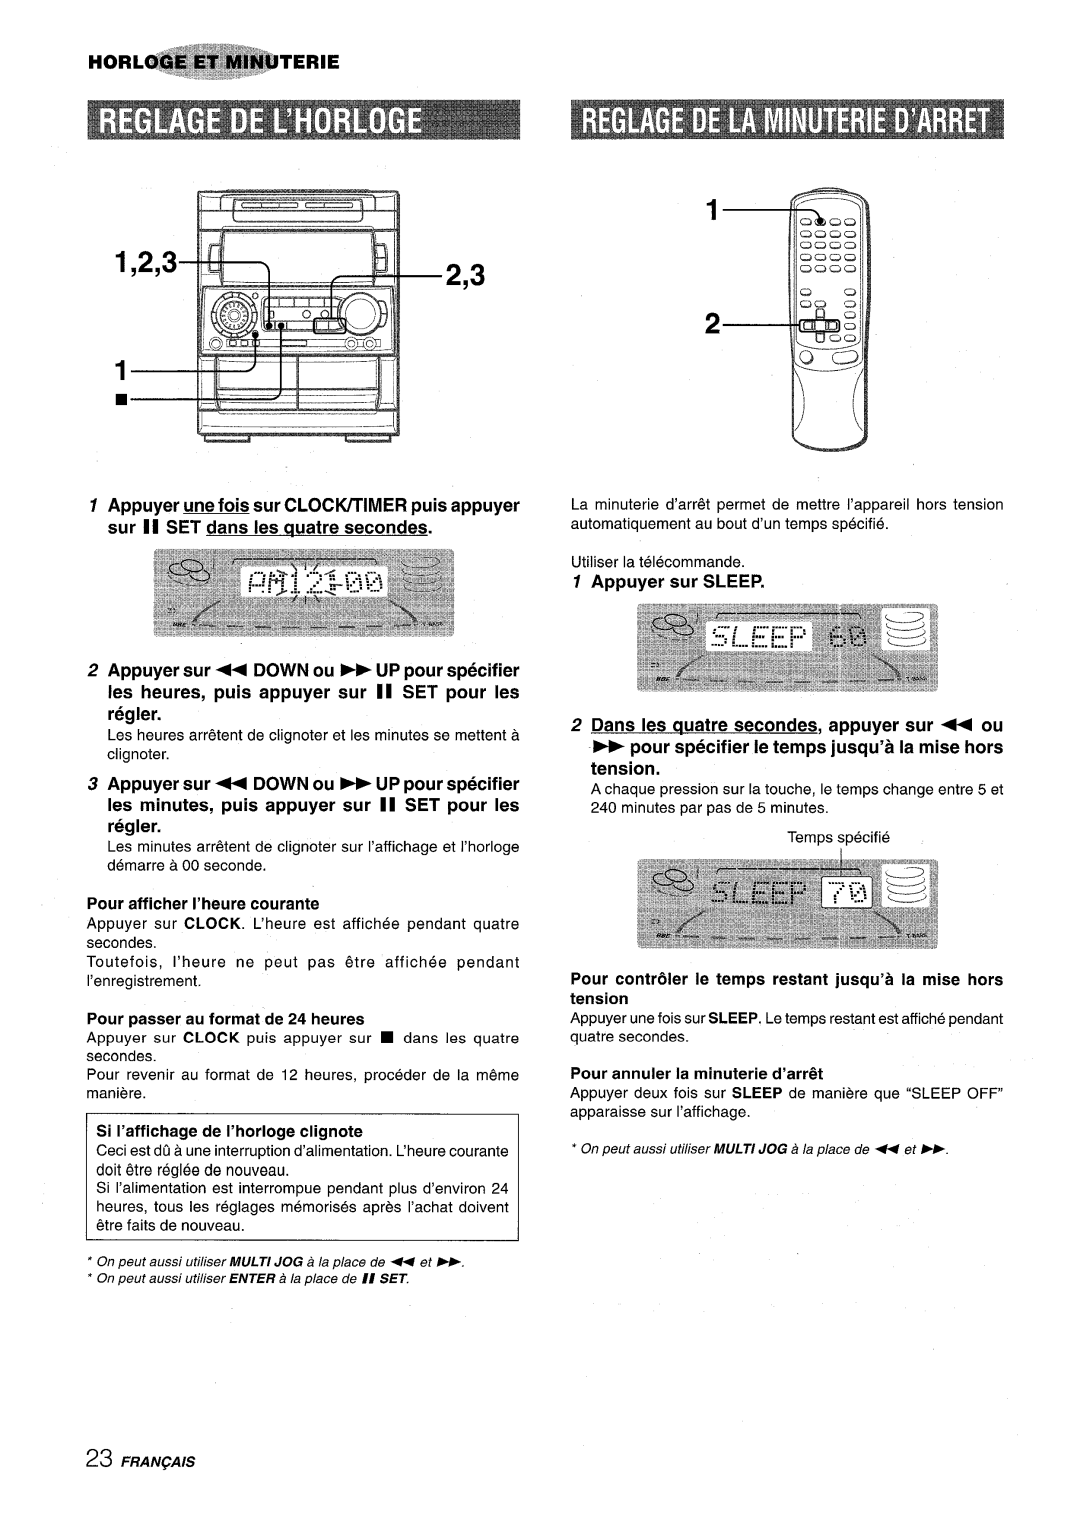 Aiwa NSX-A909 manual Les minutesarr&ent de clignotersur I’affichage et I’horloge, Pour afficher I’heure courante 